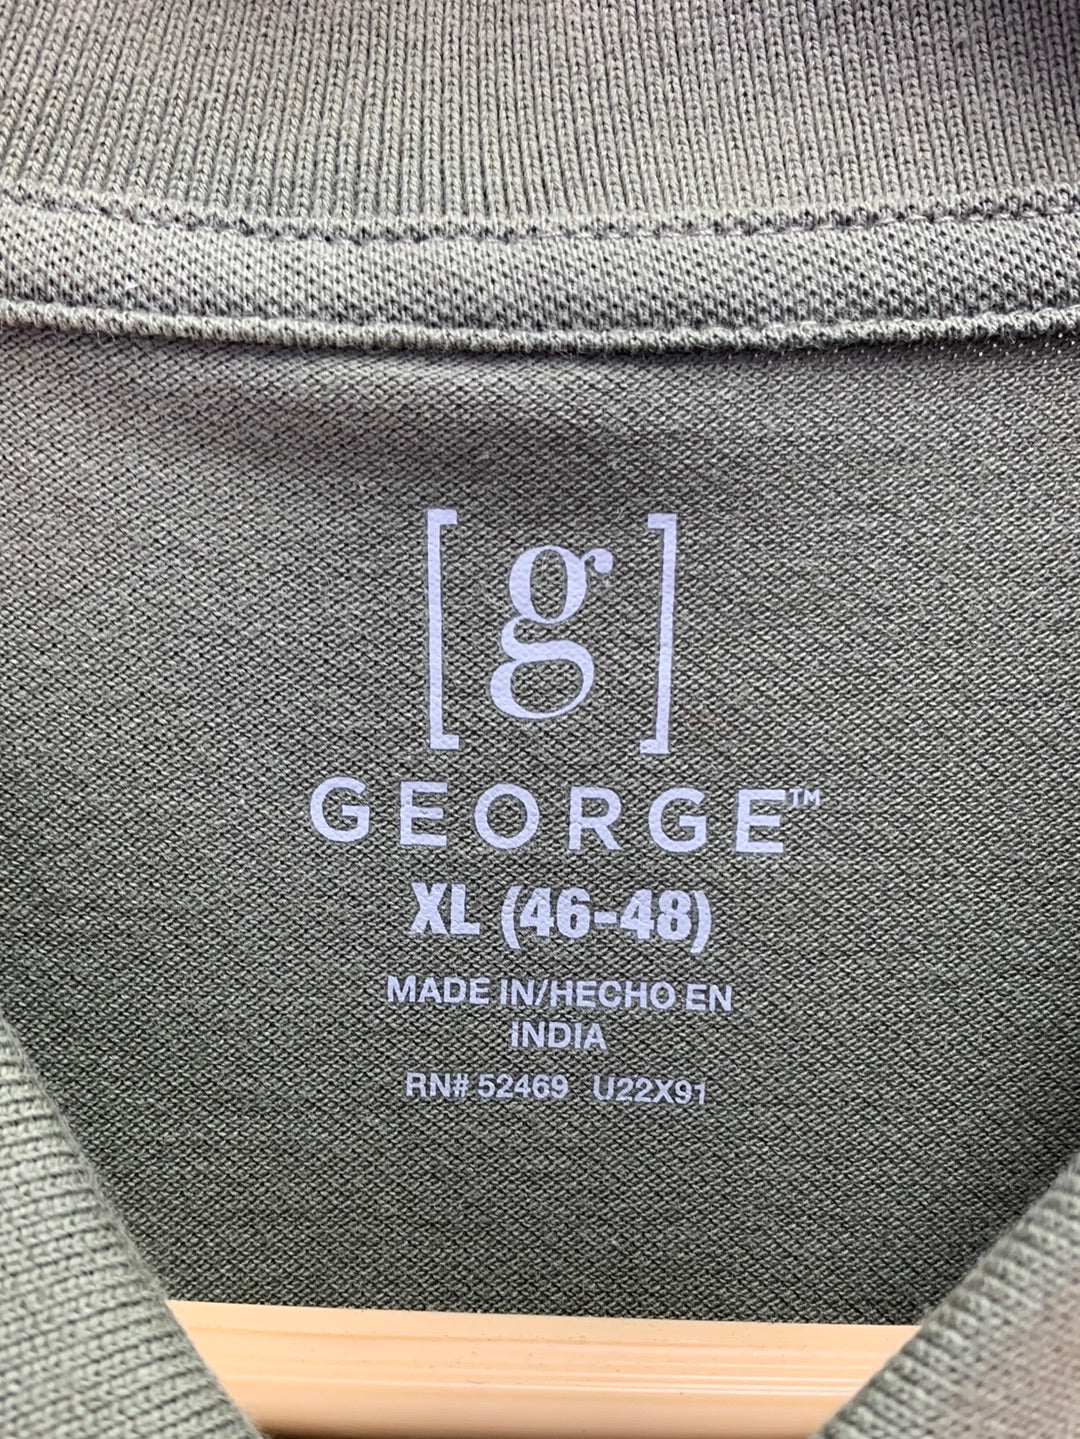 NWT - GEORGE artichoke green GE Pique Short Sleeve Polo Shirt - XL | 46-48